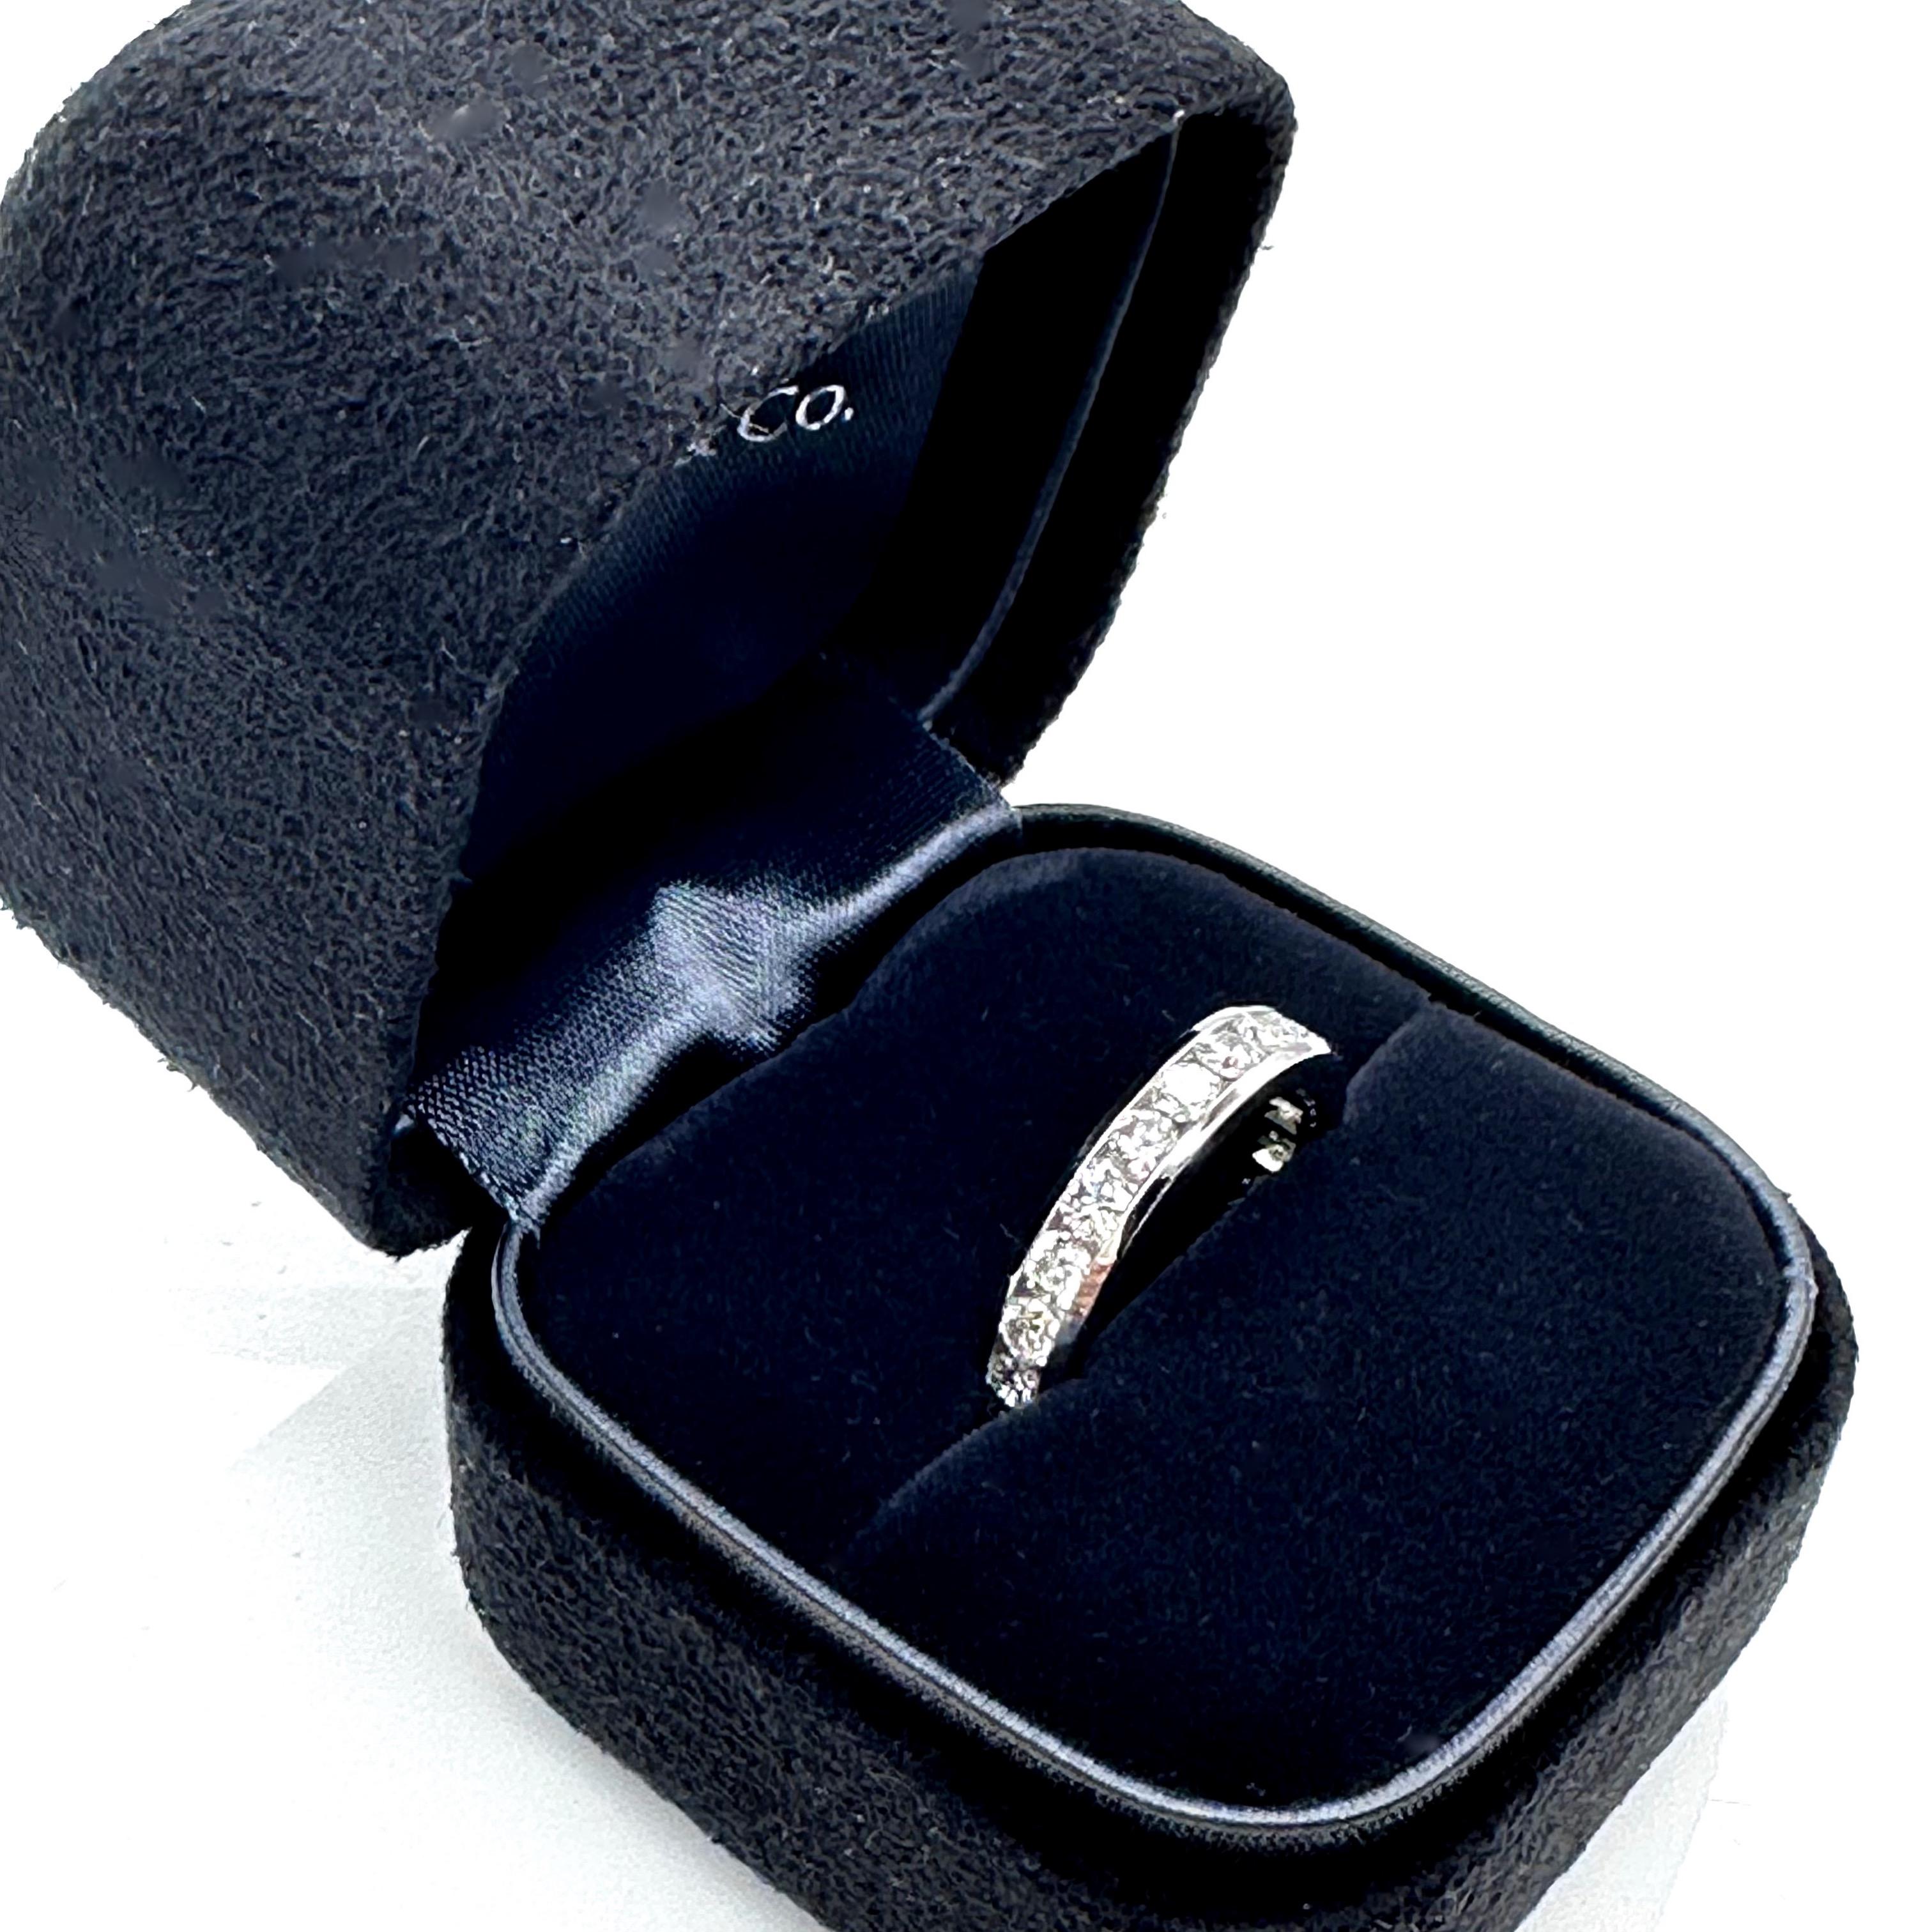 Tiffany & Co. Anneau d'alliance 4 mm en forme de cercle
Le style :  La boucle est bouclée
Numéro de référence :  6003428
Métal :  Platine PT950
Taille :  6.25
Largeur :  4 mm
TCW :  1,80 tcw
Le diamant principal :  22 diamants ronds